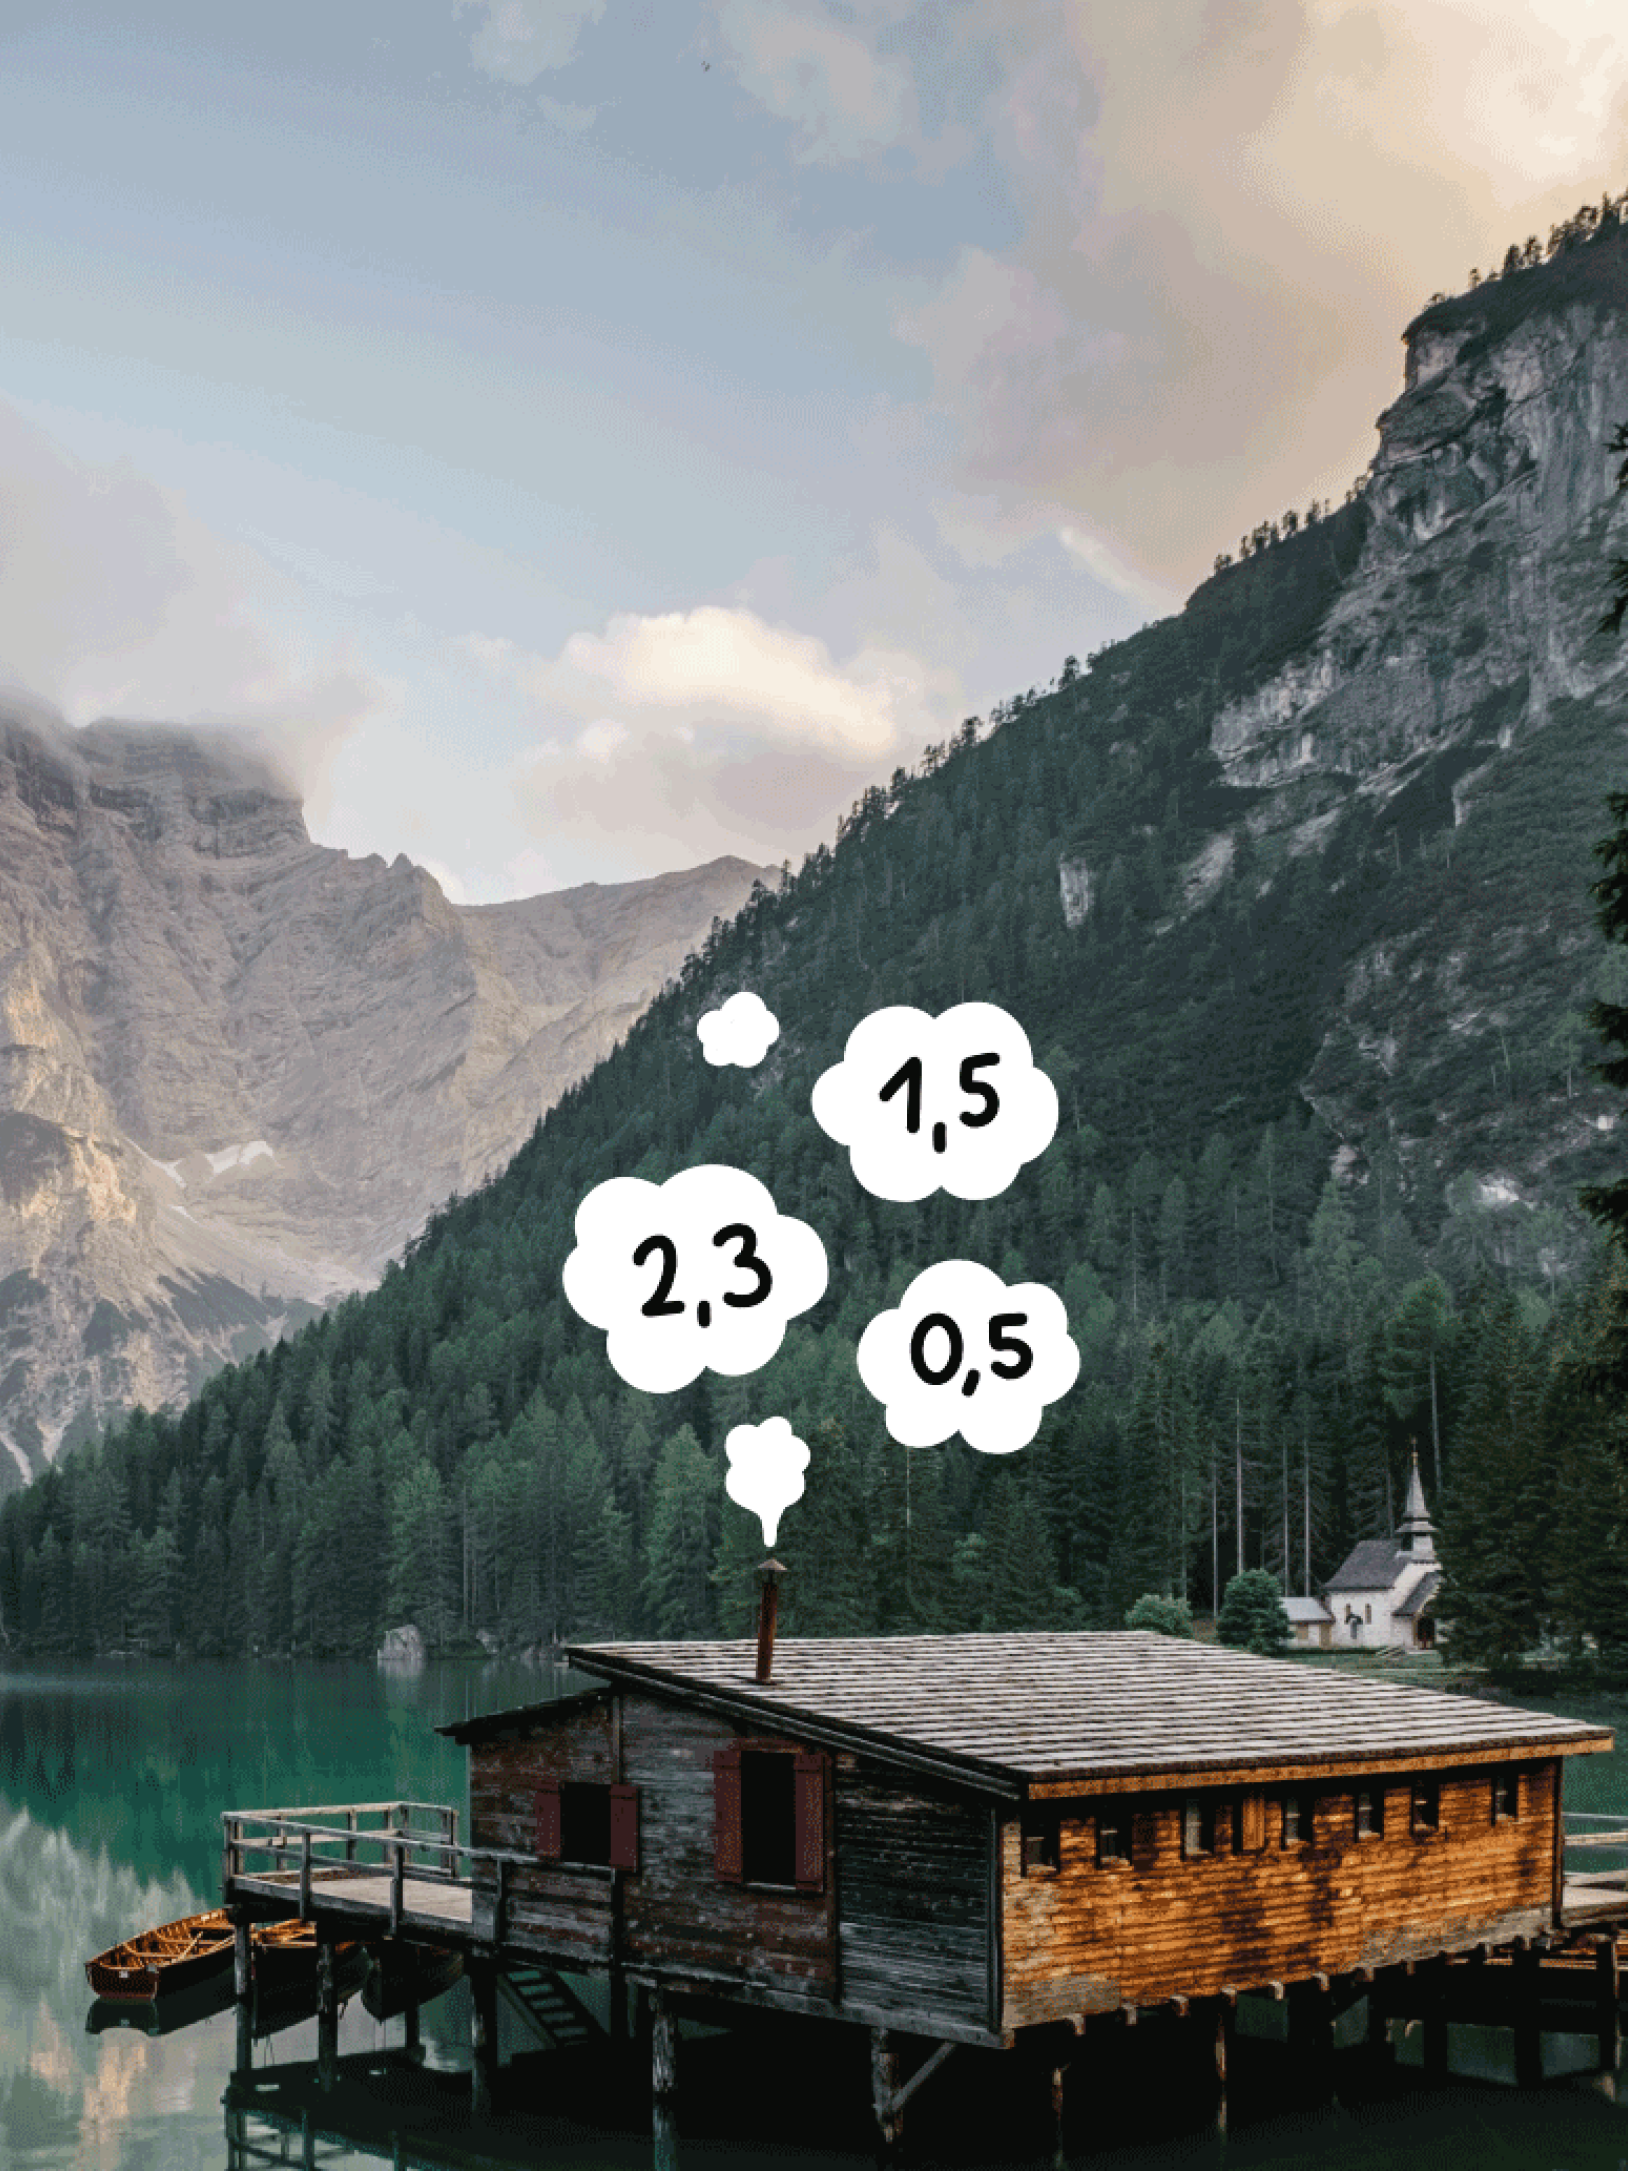 Holzhaus an Bergsee, aus Schornstein kommende Wolken mit Zahlen